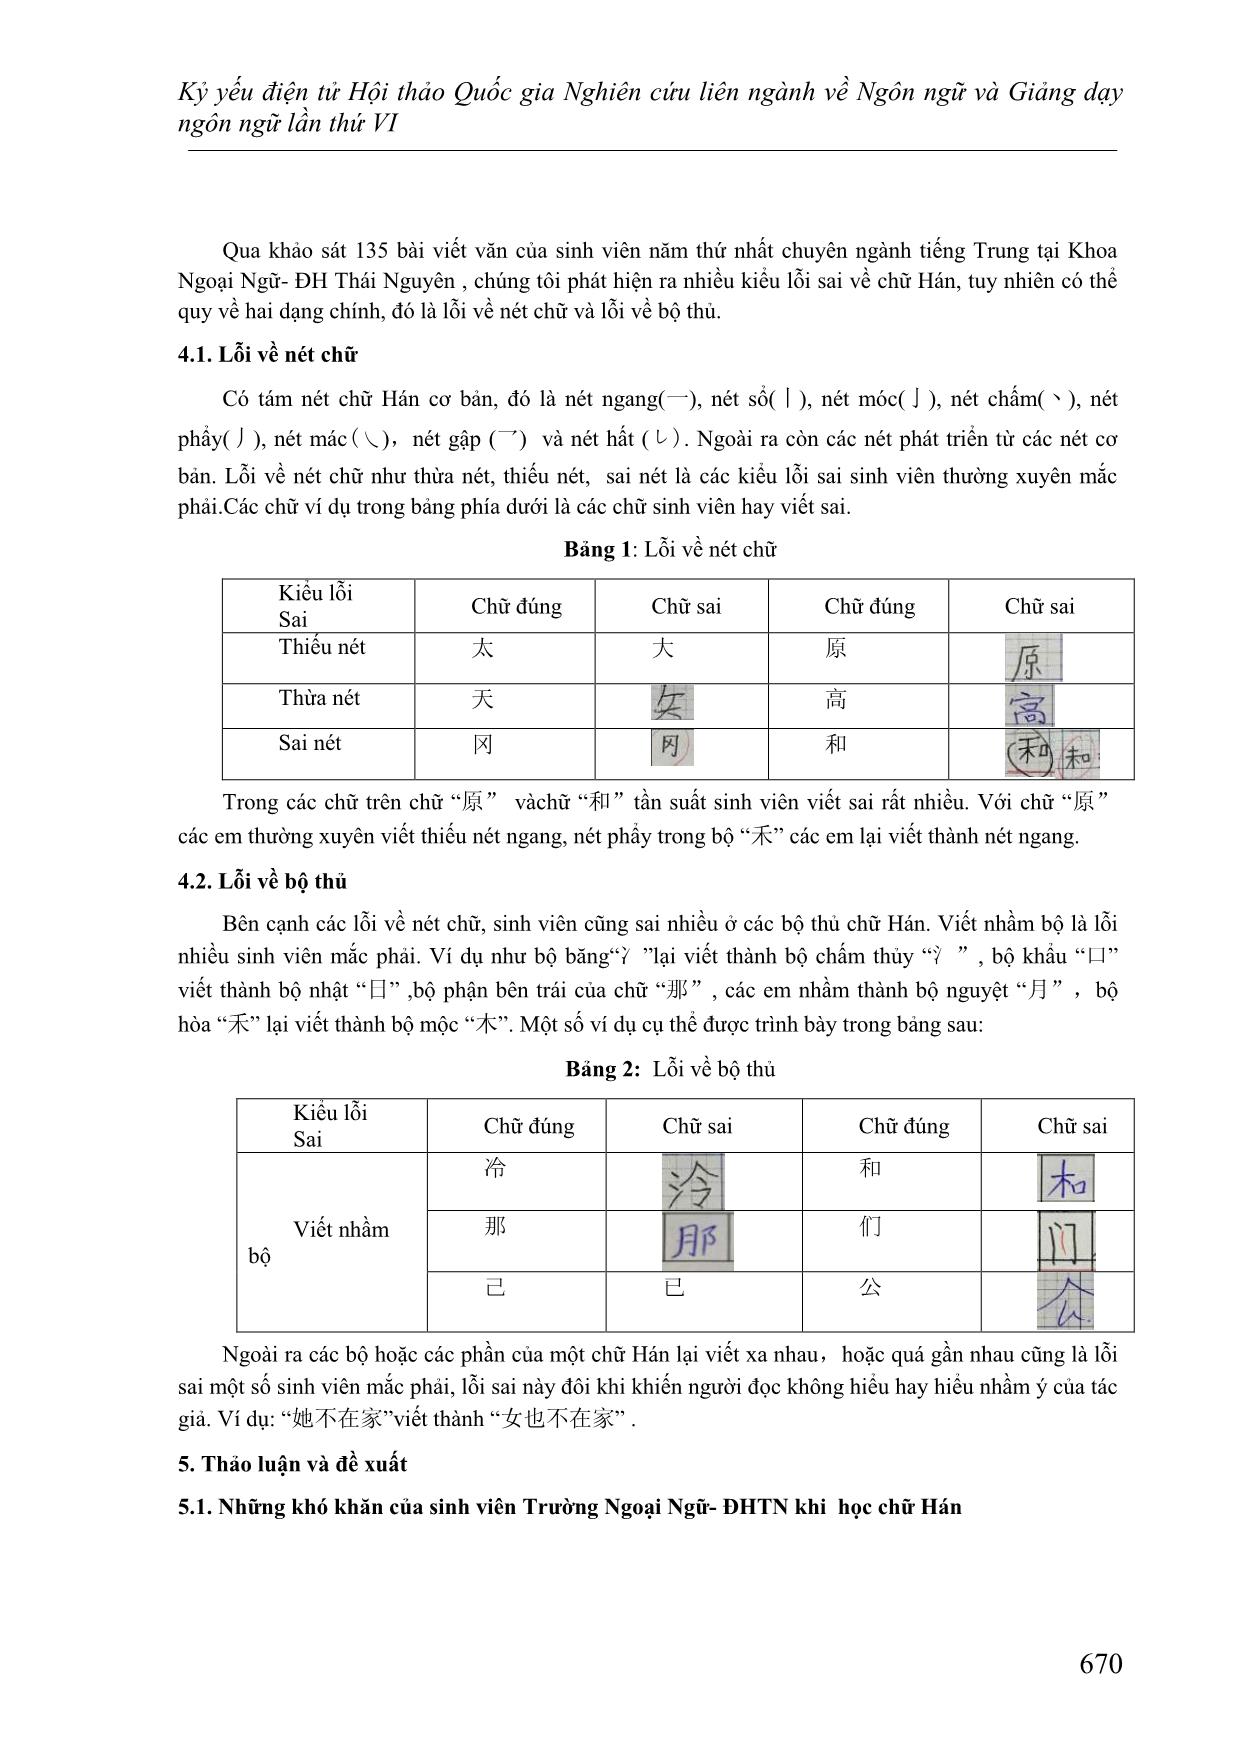 Phân tích những khó khăn của sinh viên năm thứ nhất trường Ngoại ngữ - Đại học Thái Nguyên khi học chữ Hán và các giải pháp khắc phục trang 3